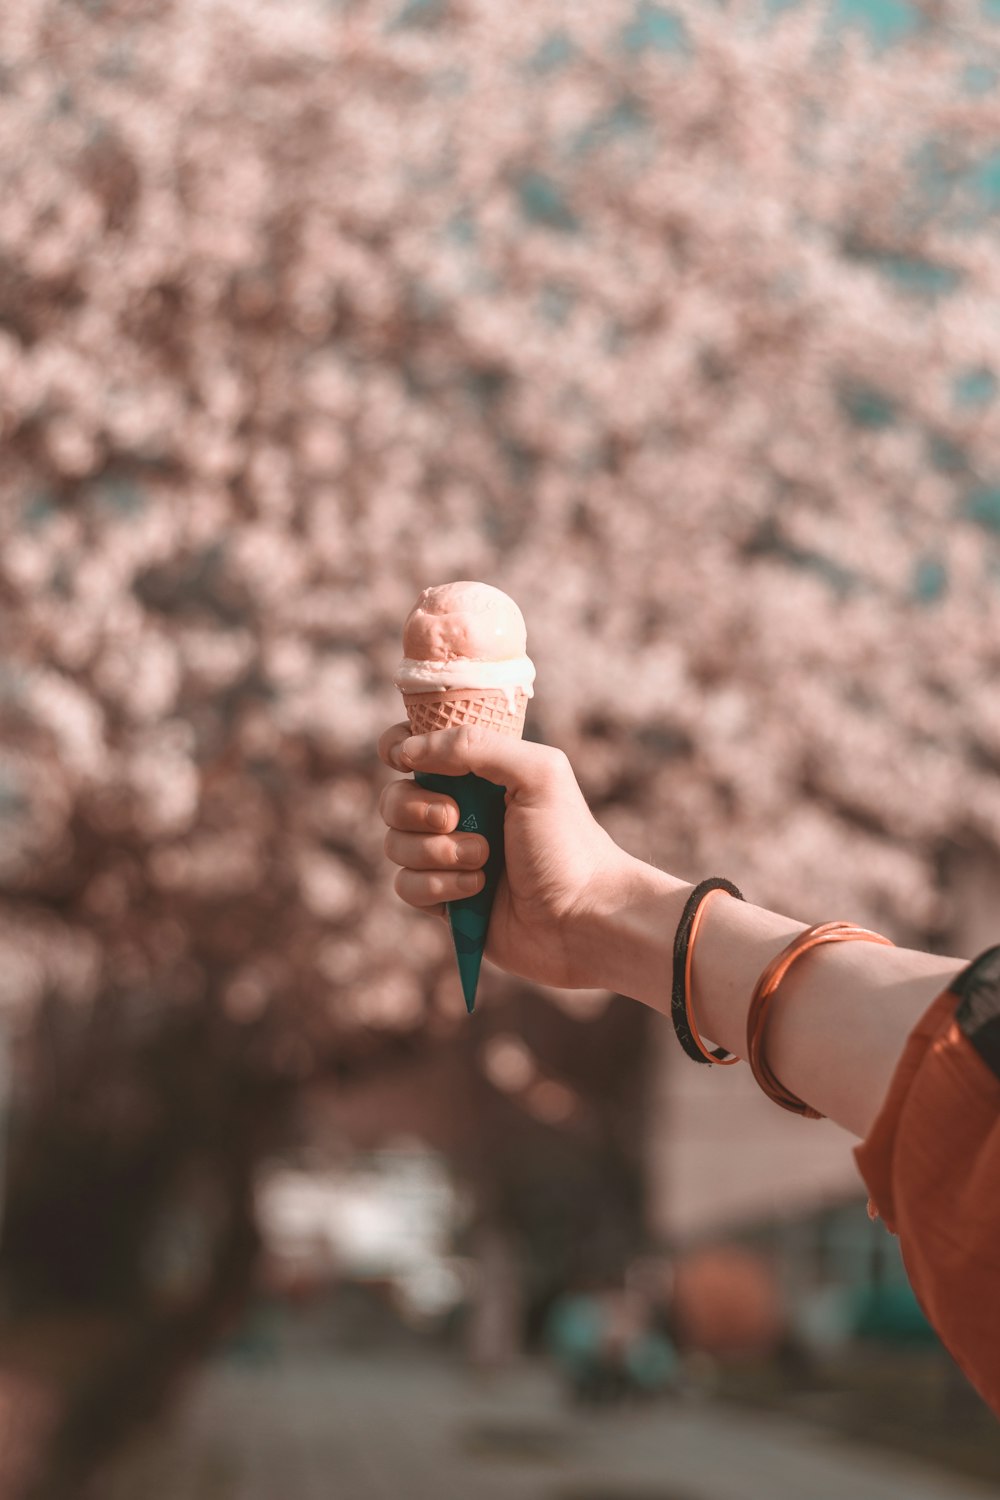 Fotografía de enfoque superficial de una persona que sostiene un helado